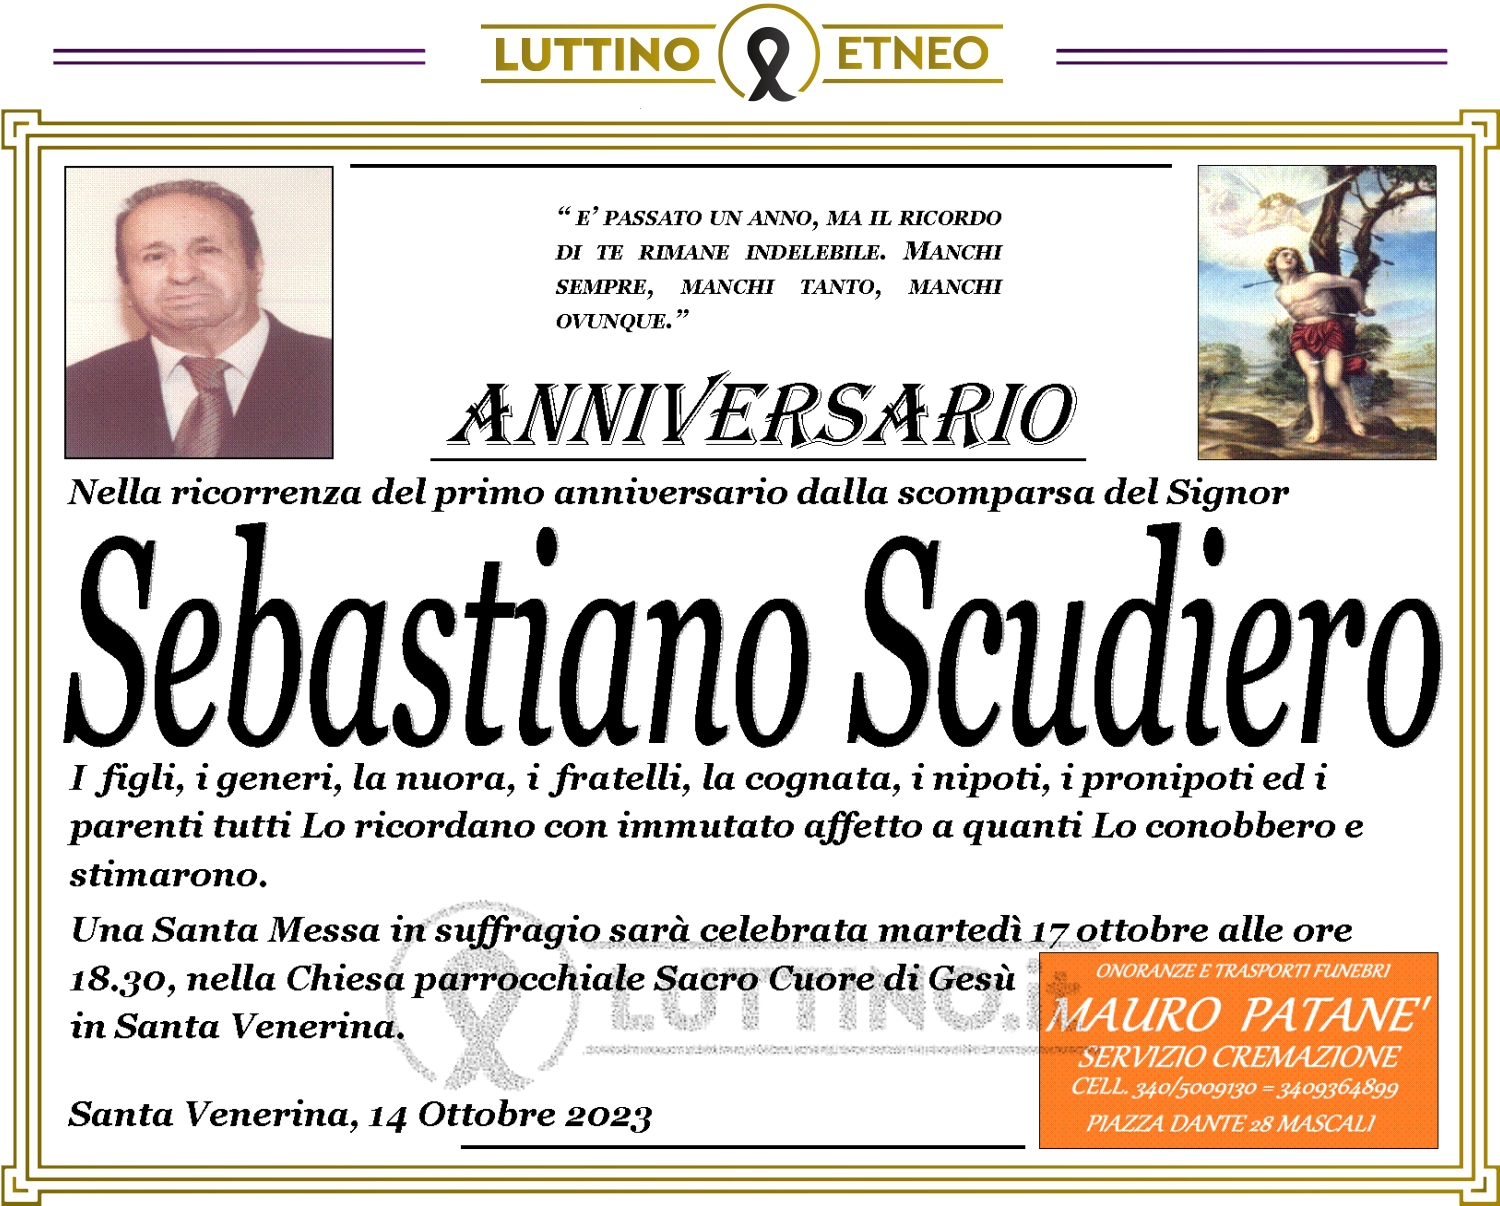 Sebastiano Scudiero